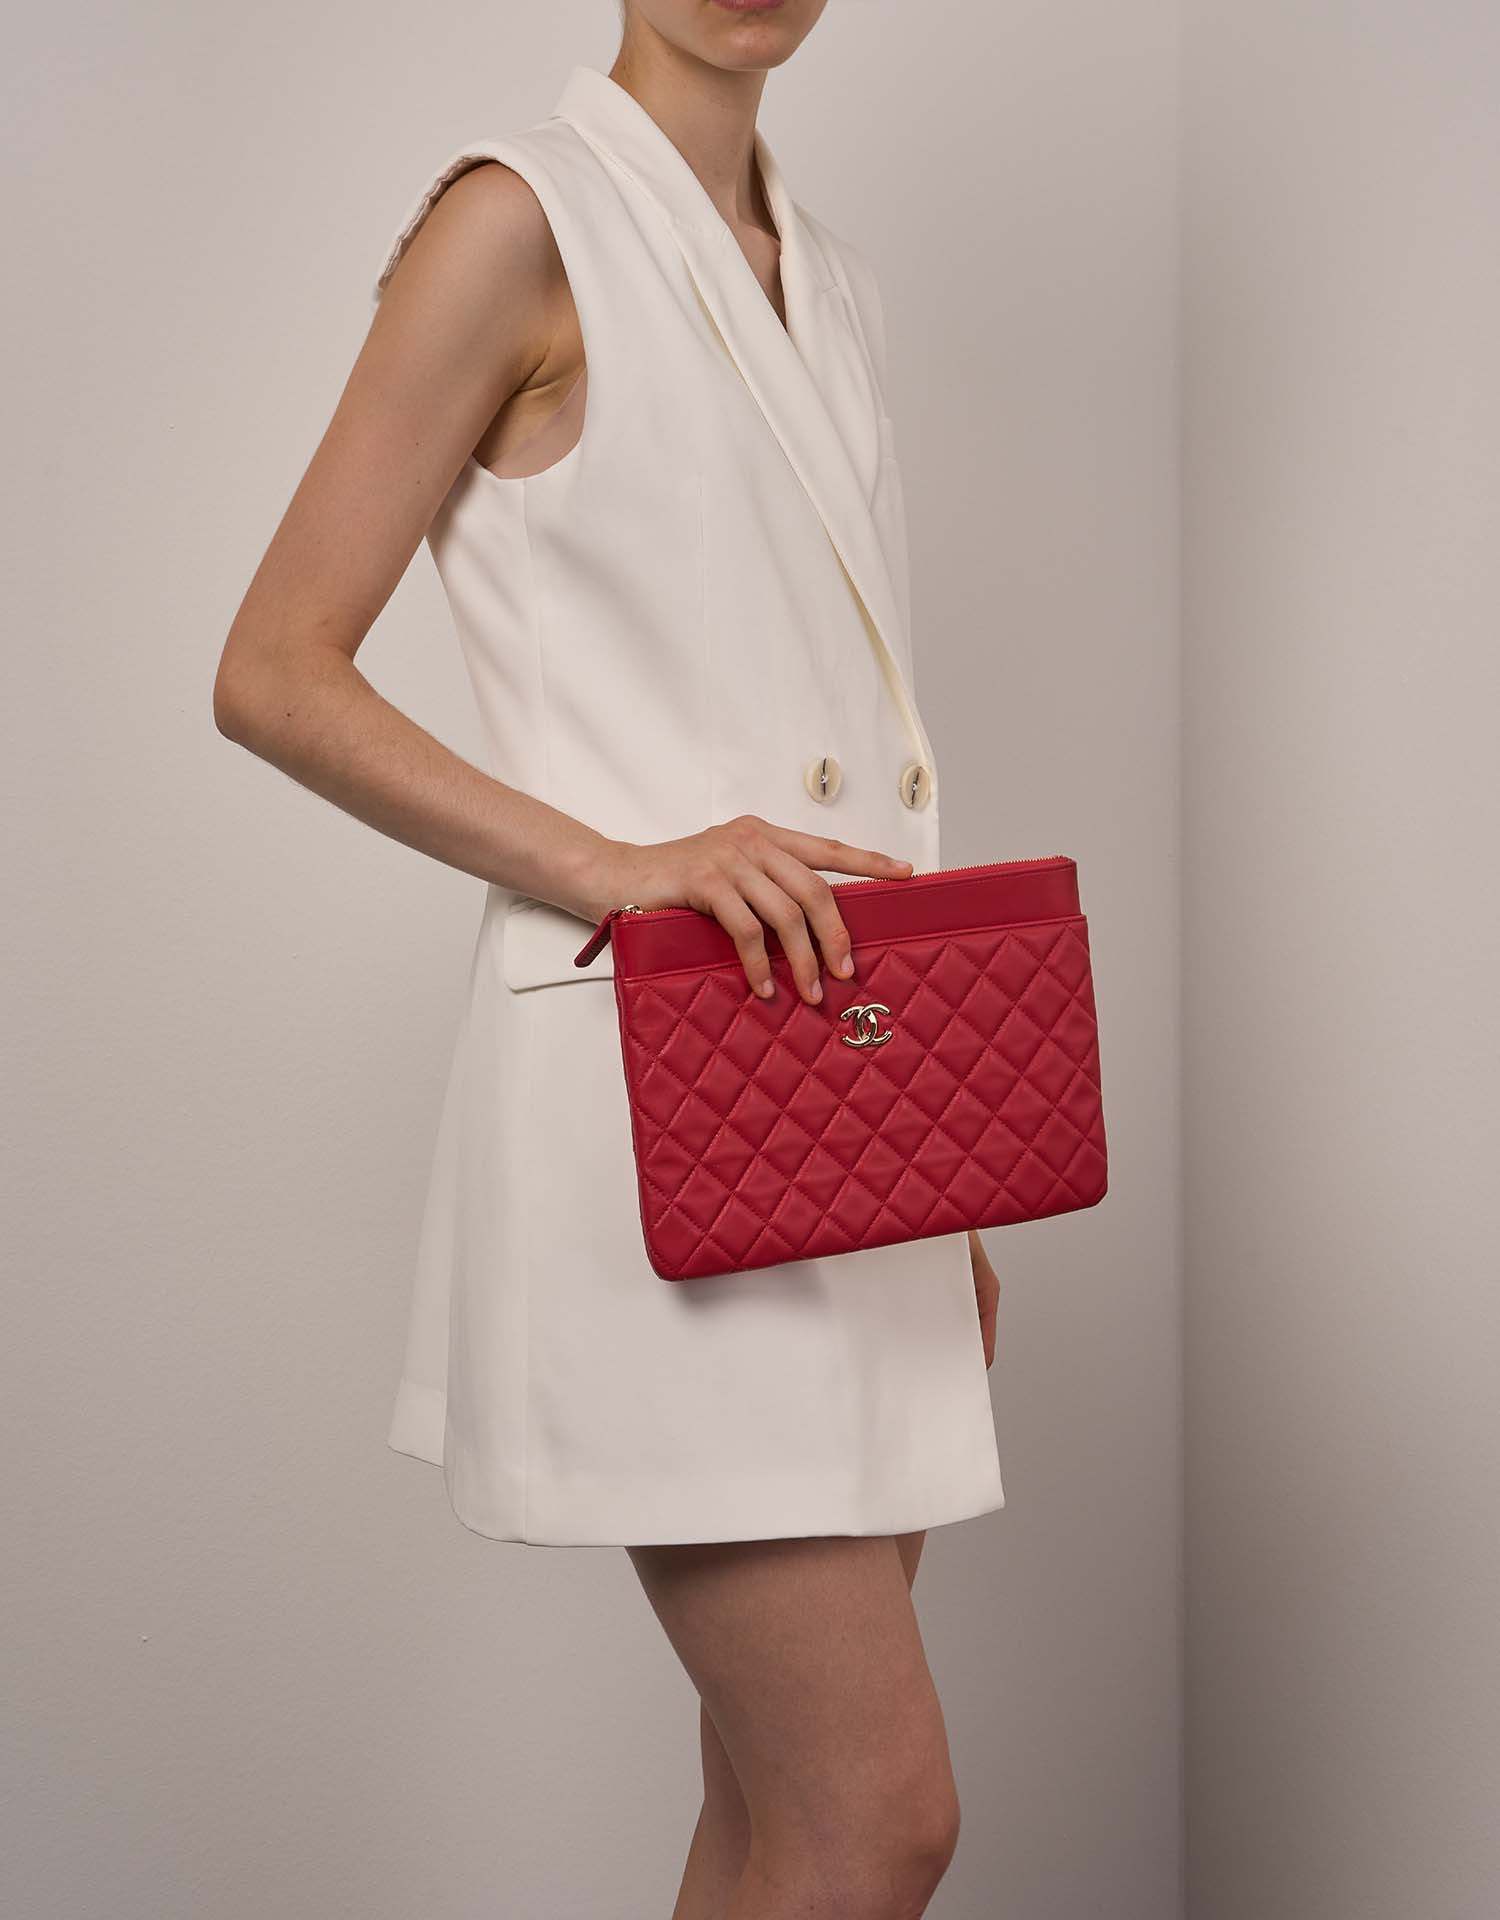 Chanel Timeless Clutch Rot Größen Getragen 1 | Verkaufen Sie Ihre Designer-Tasche auf Saclab.com